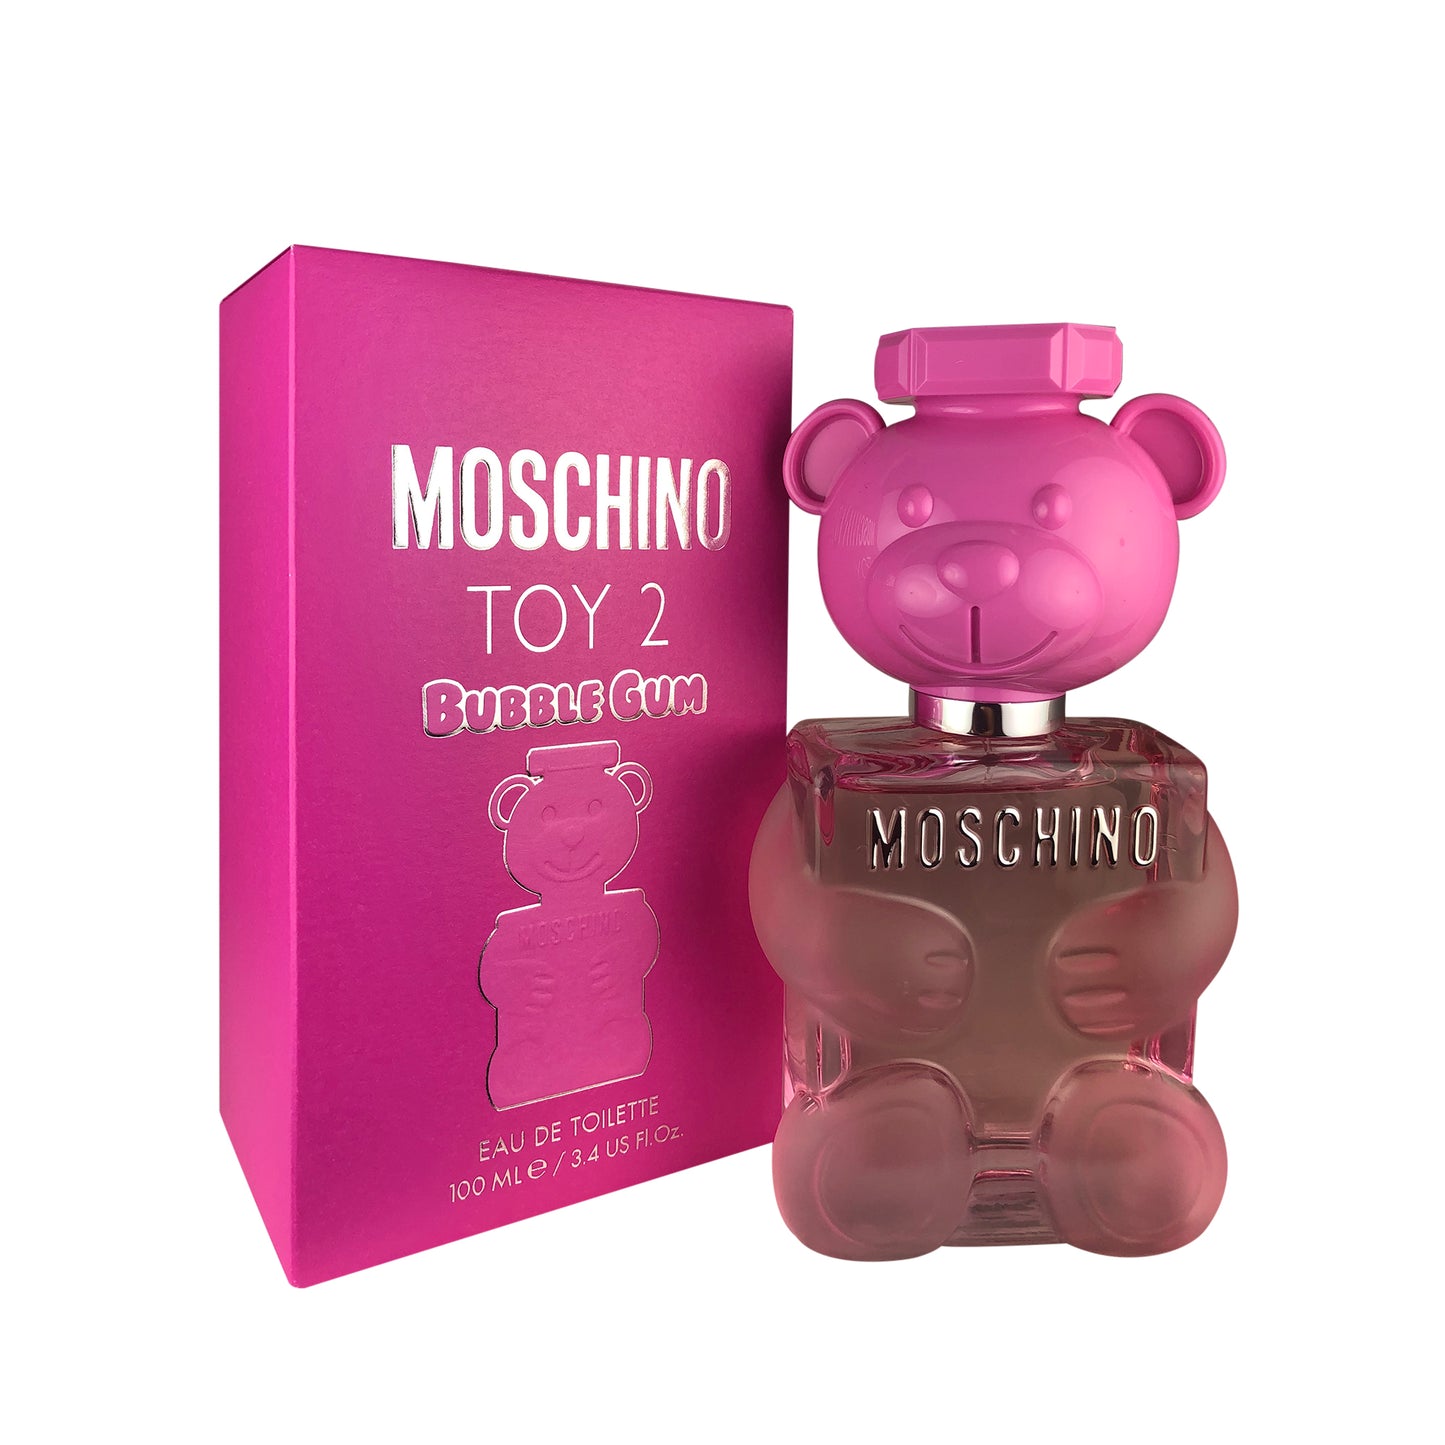 Moschino Toy 2 Bubble Gum Eau de Toilette for Women